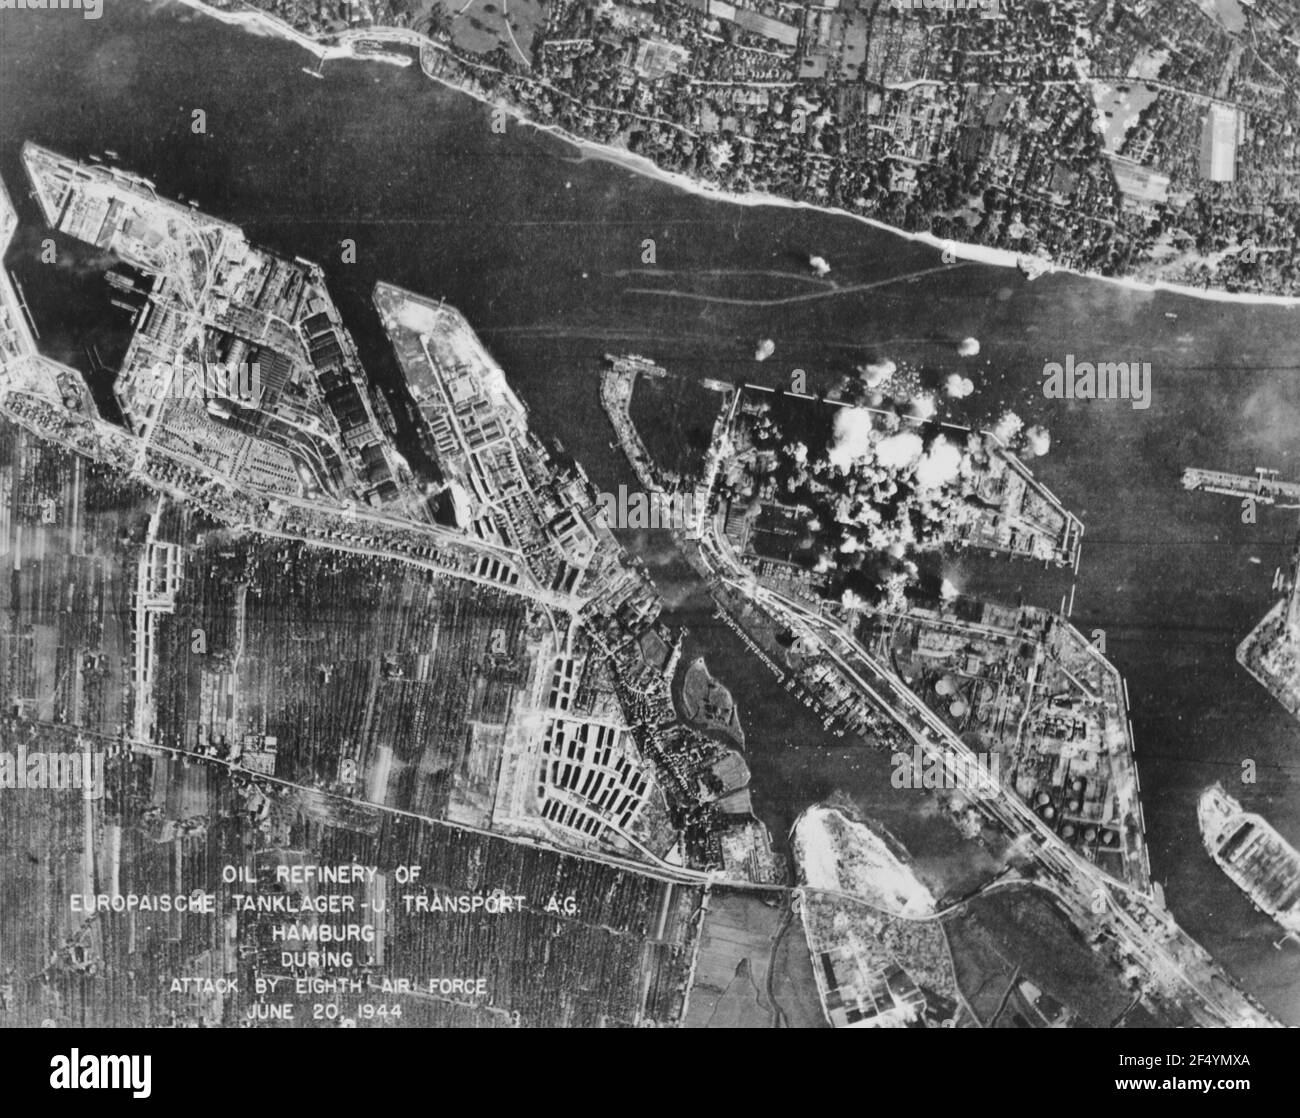 Ölraffinerie des Europaische-Tanklager U. Transport A.G. in Hamburg, Deutschland, während des Angriffs von 8th Luftstreitkräfte am 20. Juni 1944 Stockfoto